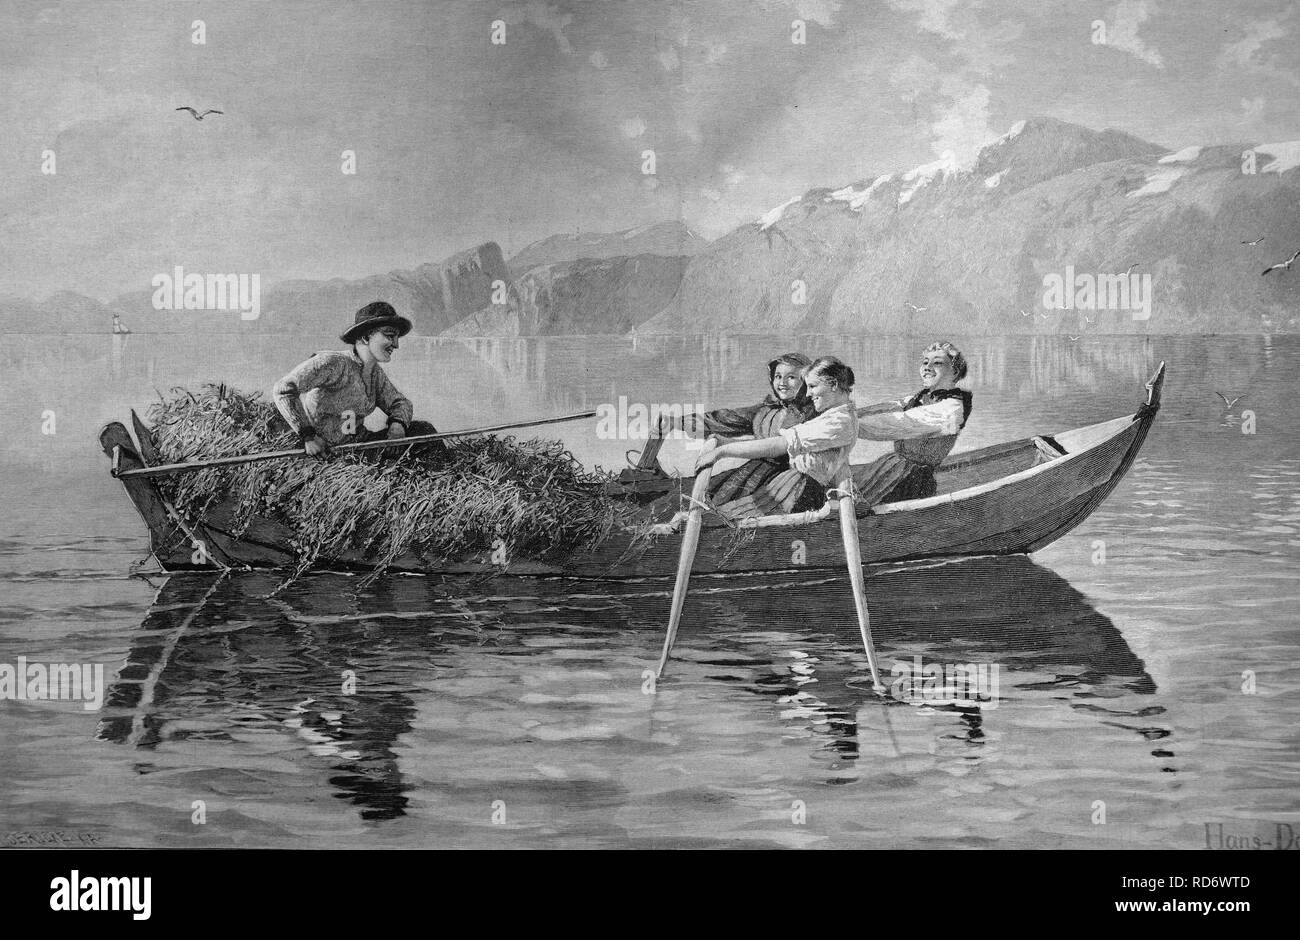 Trajet en bateau avec de l'herbe récoltée, gravure sur bois, circa 1871 Banque D'Images